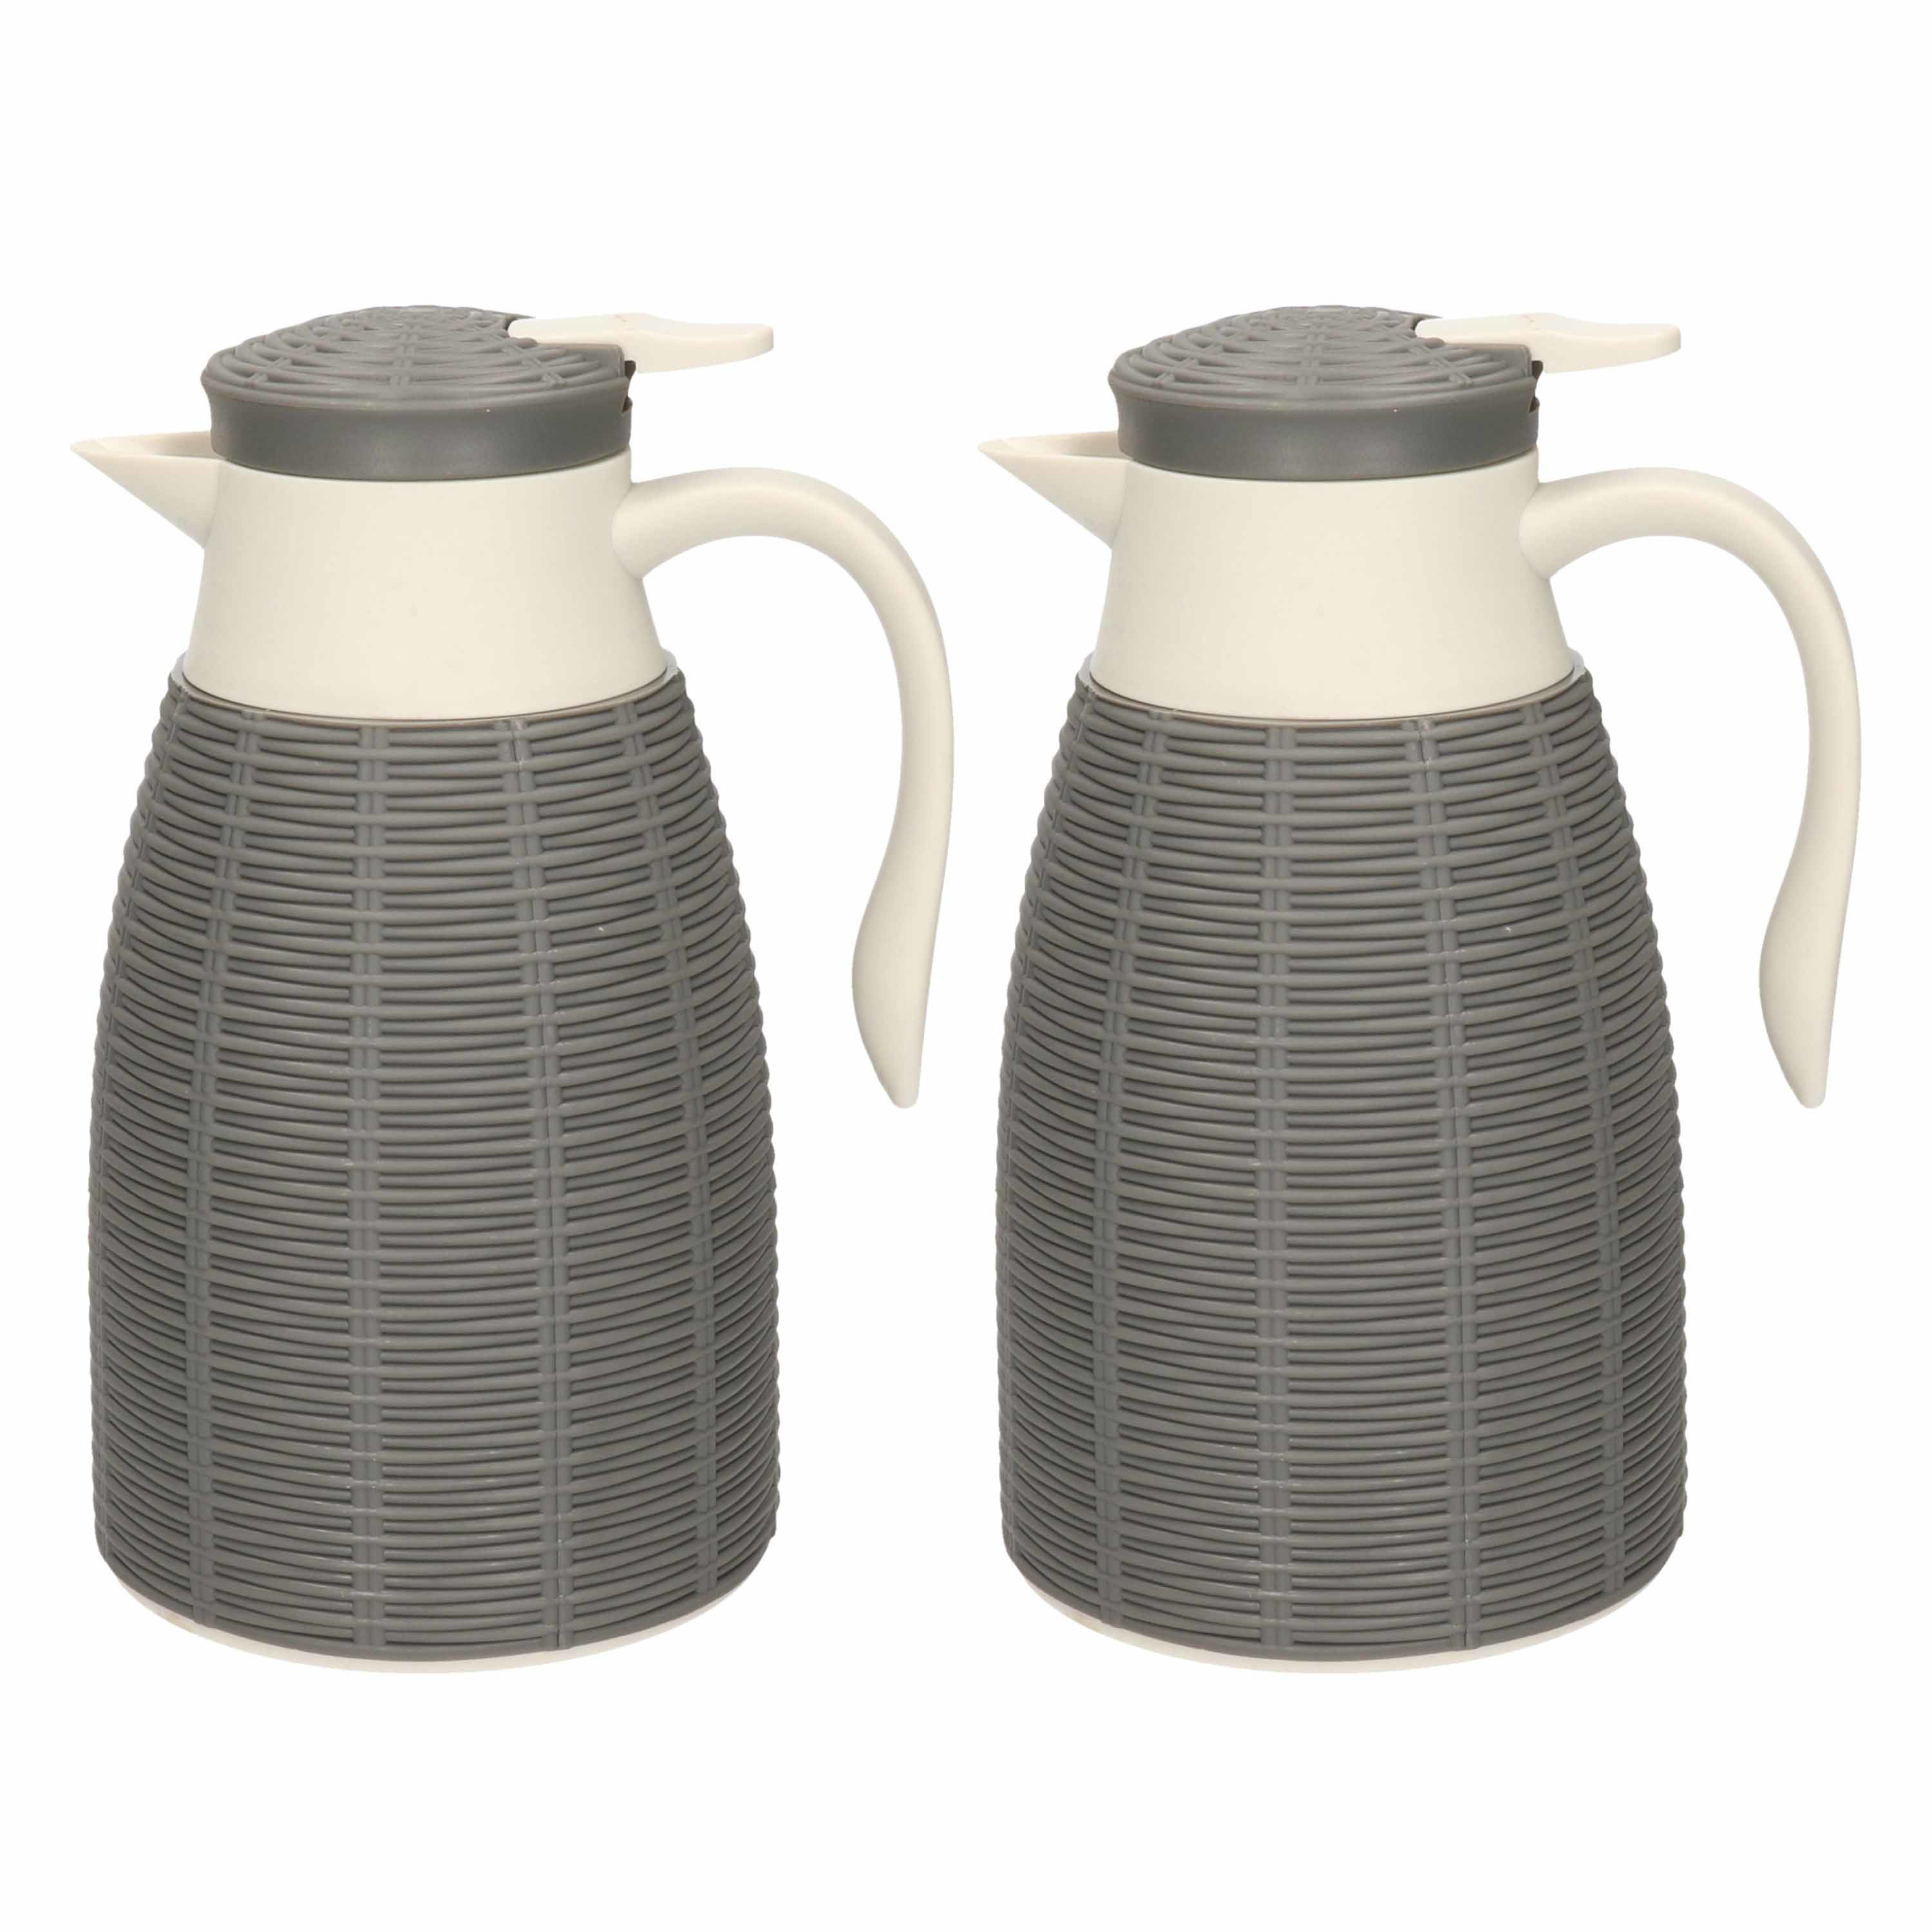 2x Grijze rotan koffiekan/isoleerkan 1 liter - Koffiekannen/theekannen/isoleerkannen/thermoskannen